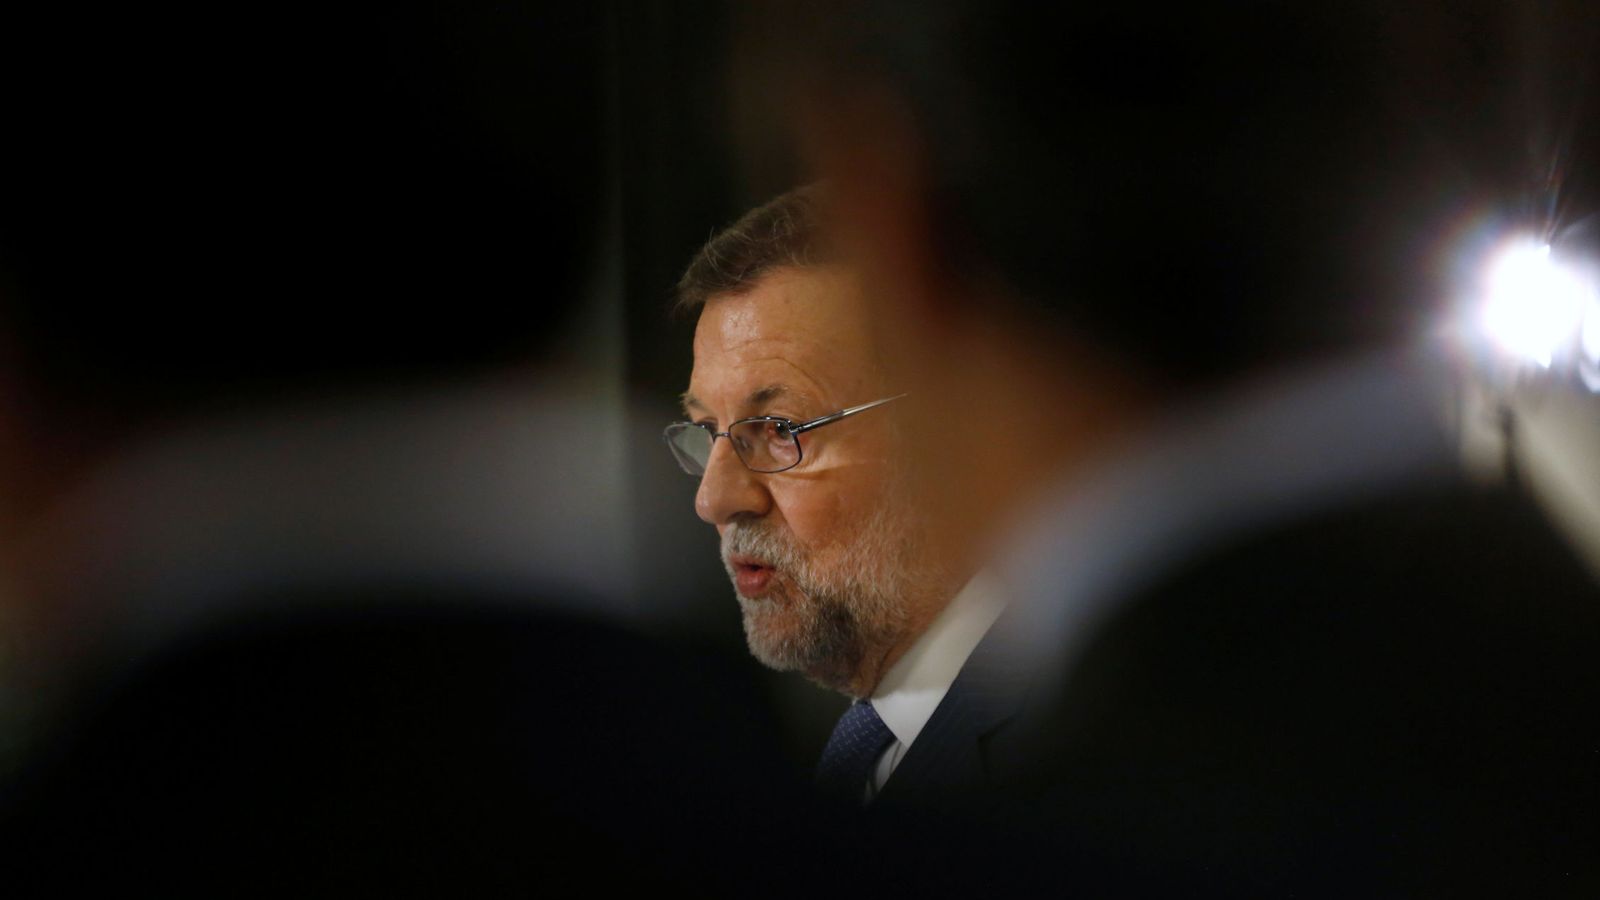 Foto: El presidente del Gobierno en funciones, Mariano Rajoy. (Reuters)